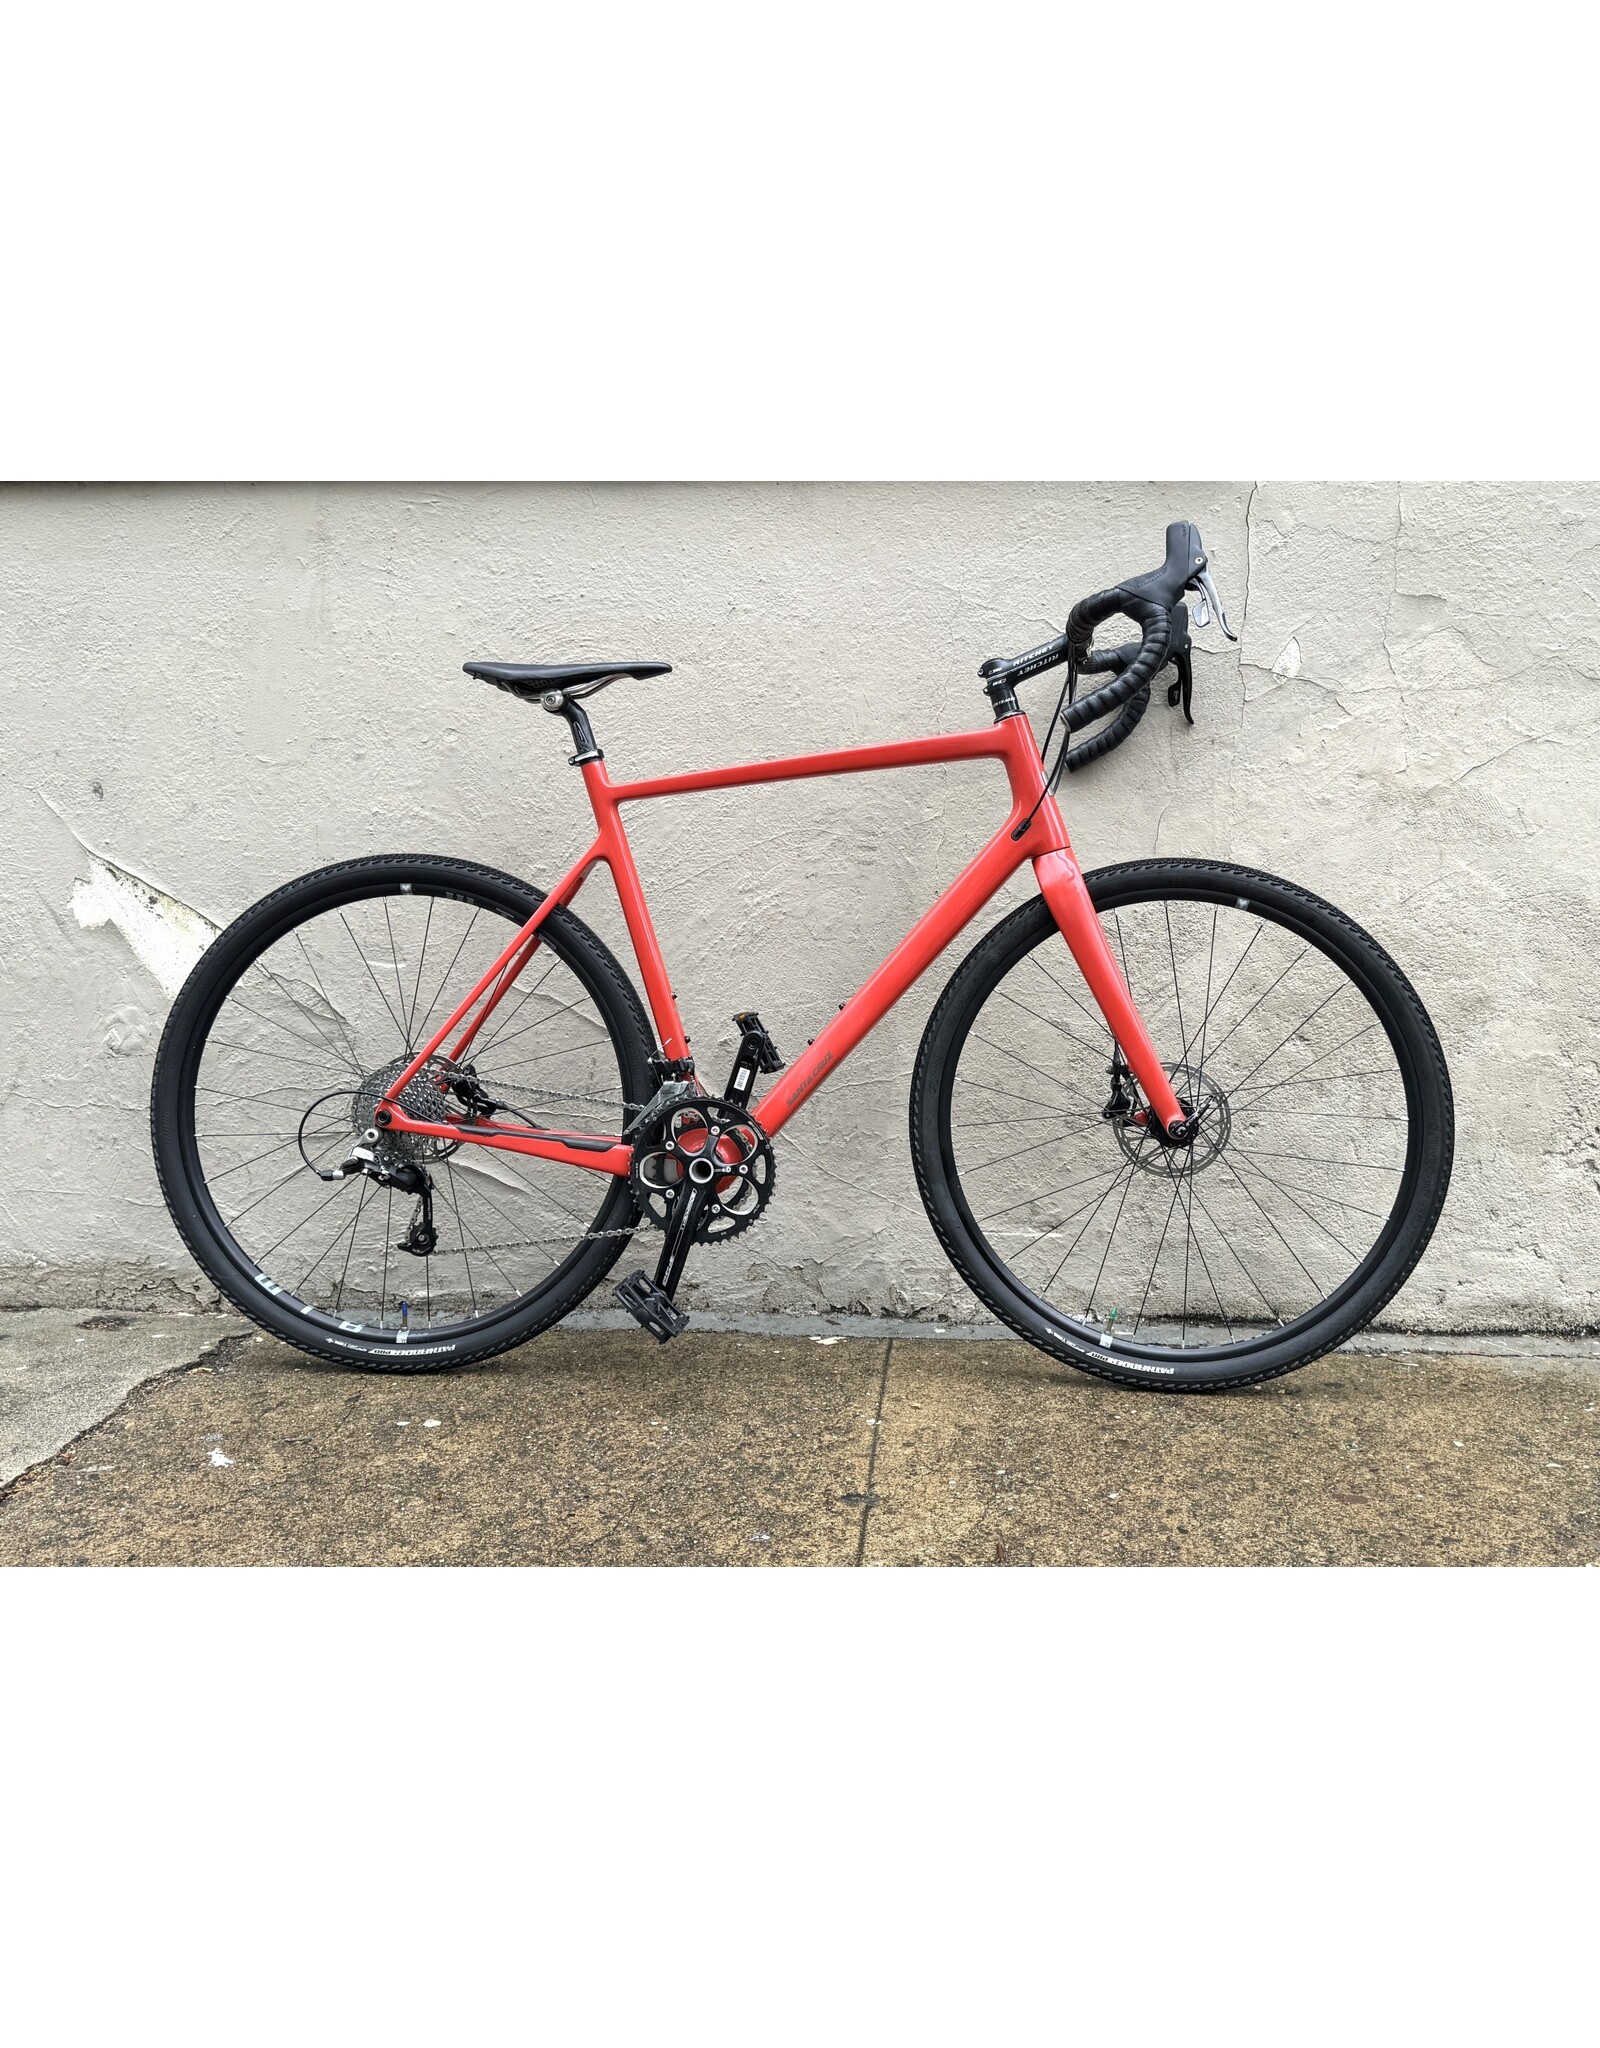 Santa Cruz Santa Cruz Stigmata CC Gravel Bike, 2019, 60cm, Orange